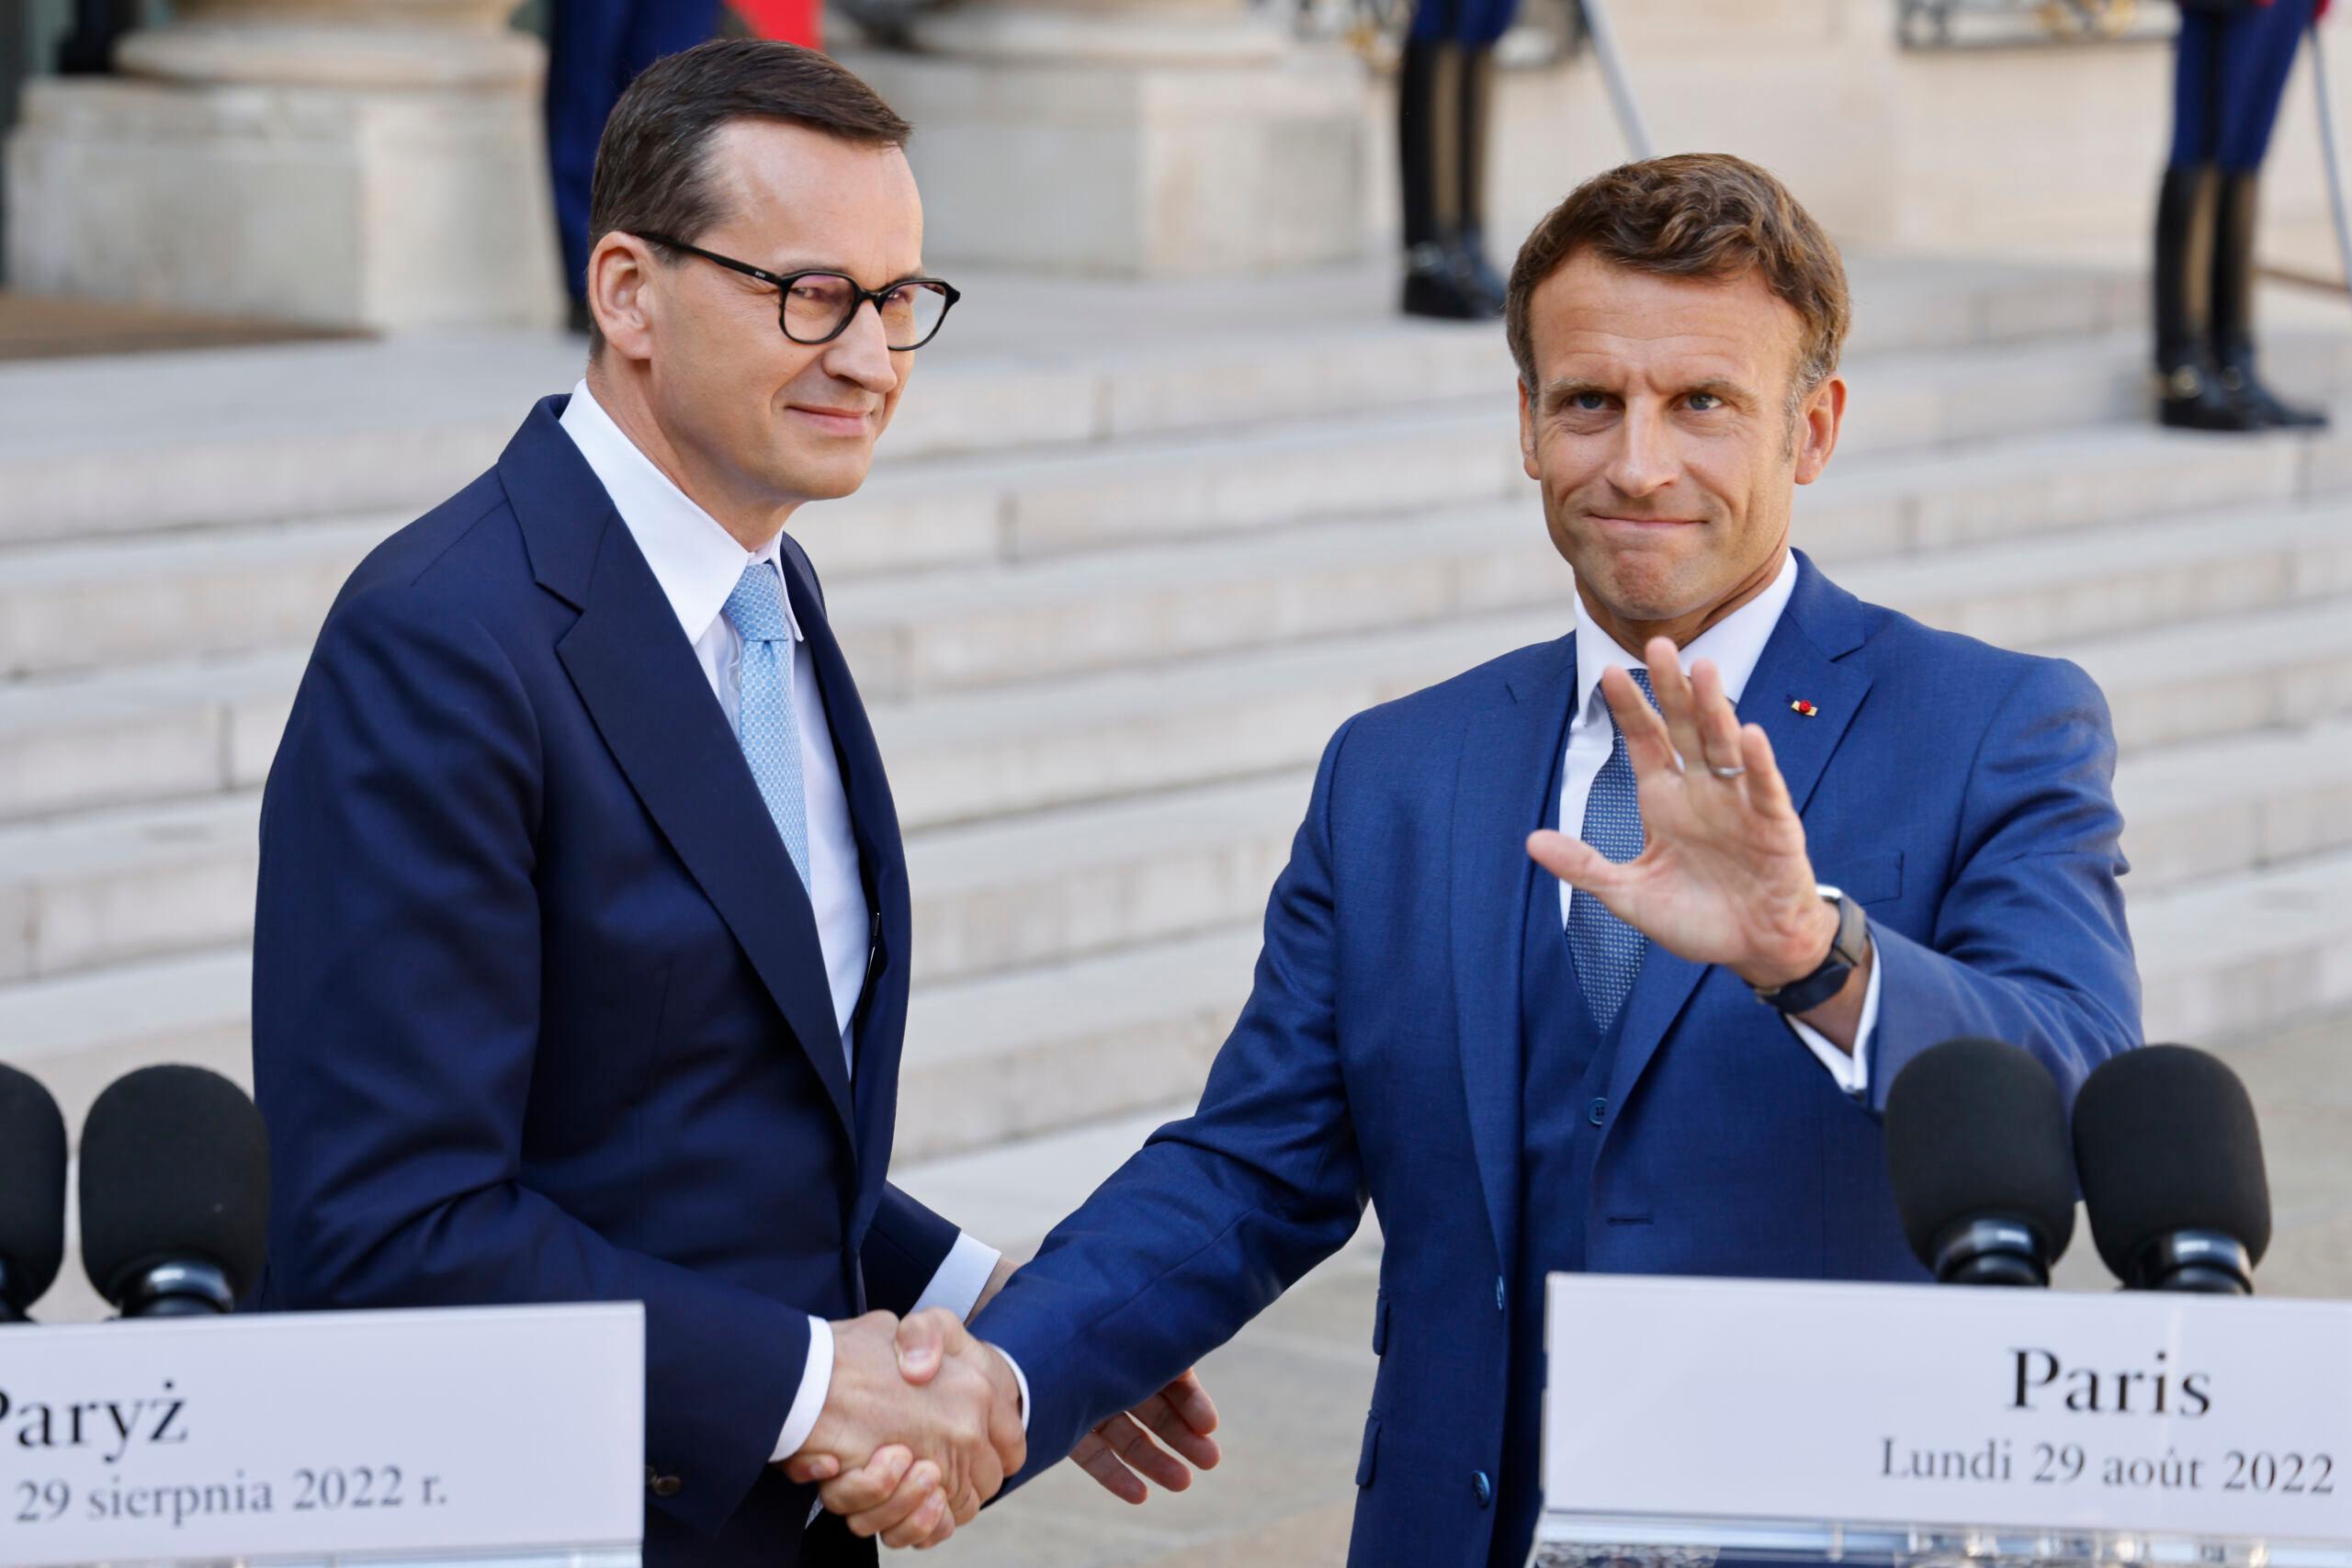 Mężczyzna ściuska rękę drugiemu mężczyznie, Morawiecki i Macron witają się